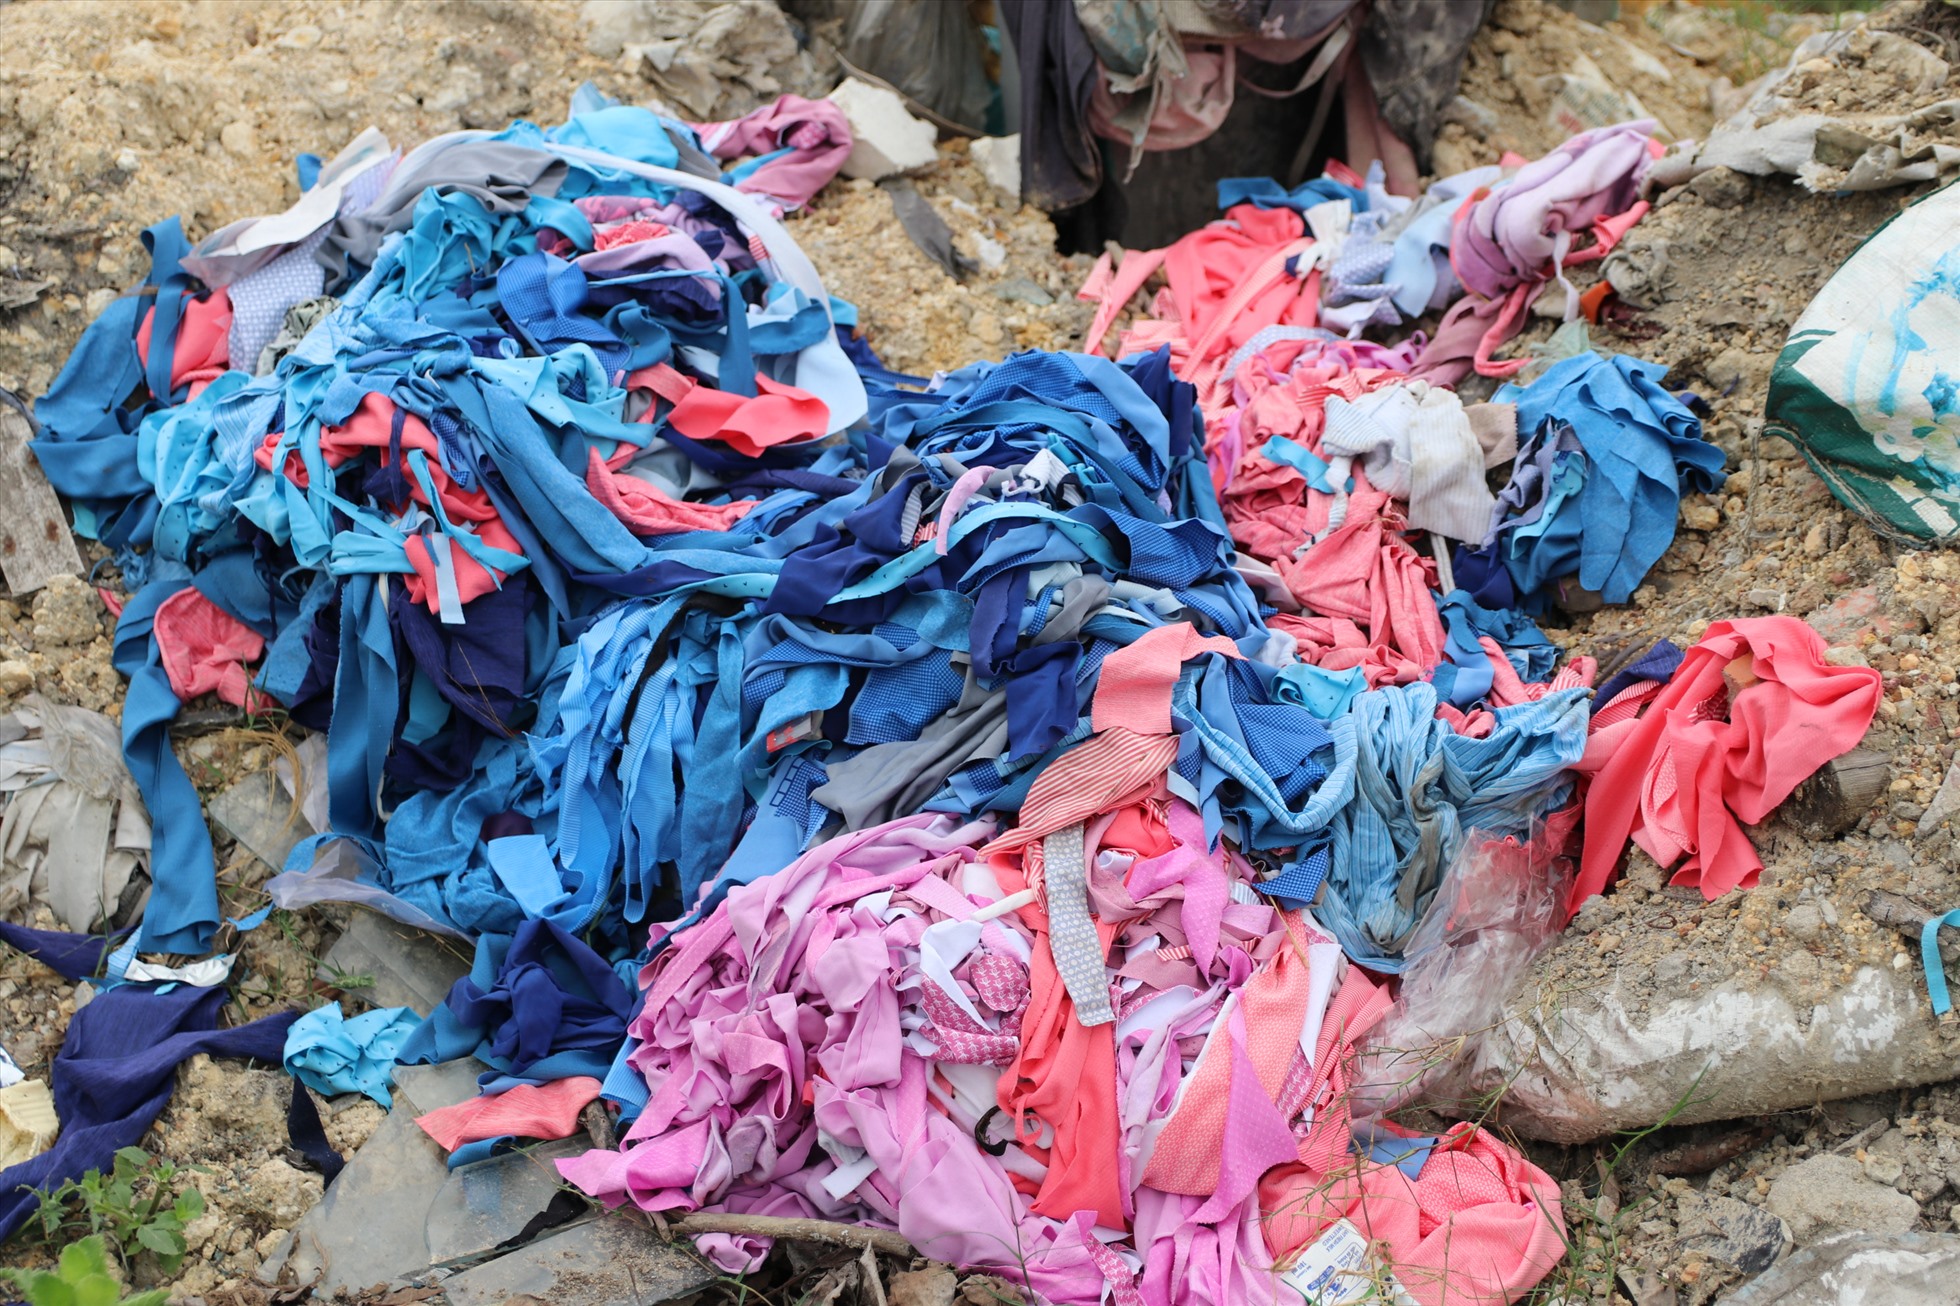 Những đống vải vụn từ các tiệm may được vứt bỏ tràn lan không có túi đựng, phó mặc cho công nhân vệ sinh môi trường.